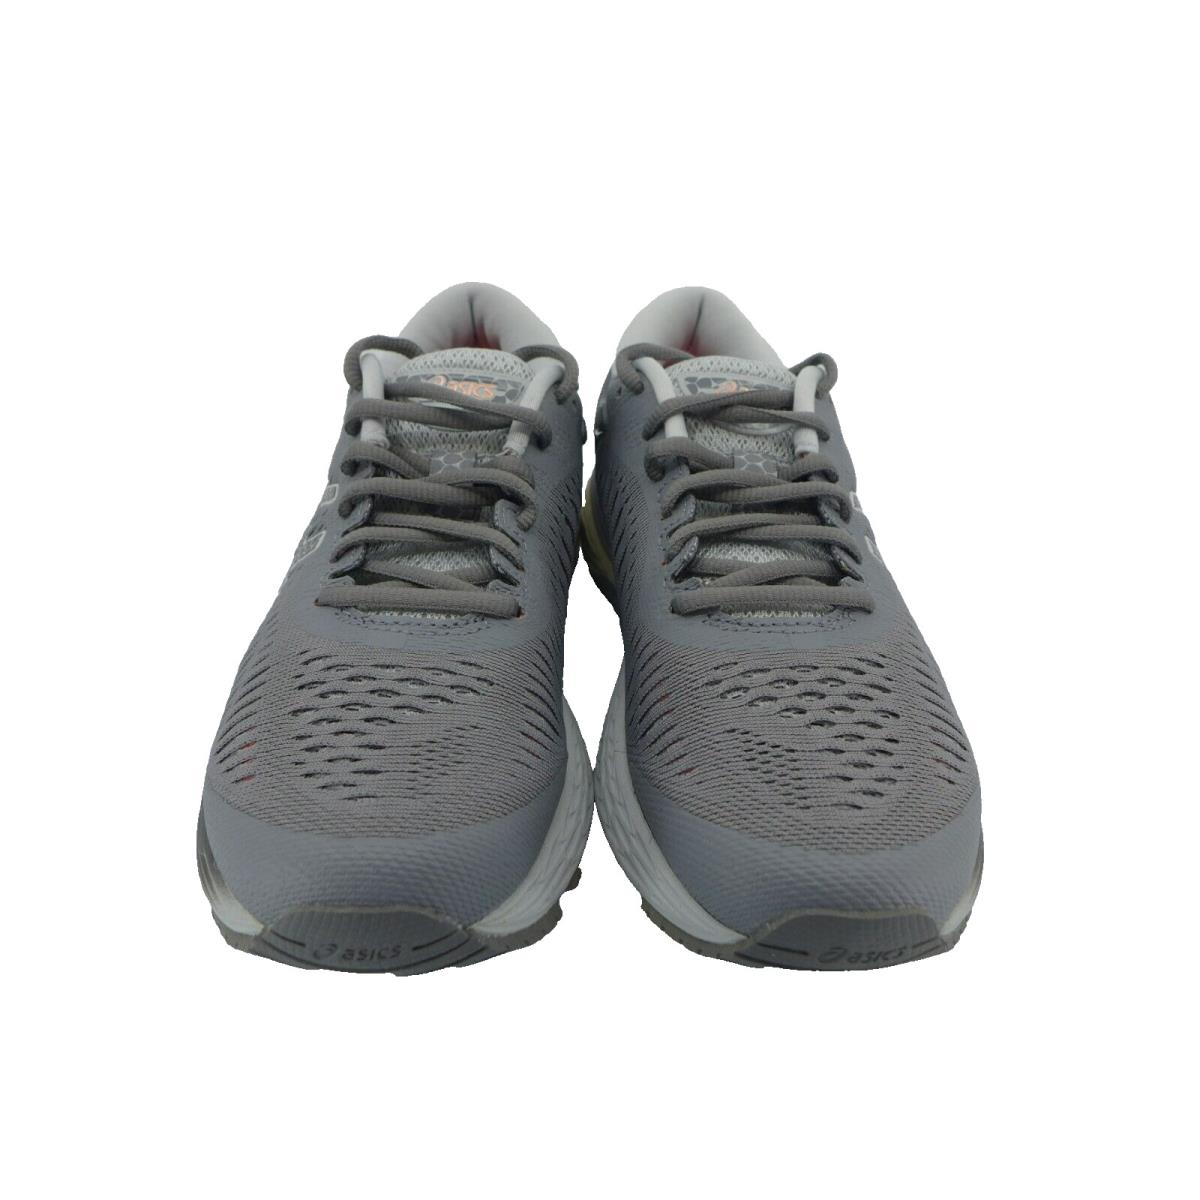 Asics Gel Kayano 25 Womens Dark Gray Running Shoes Size 5